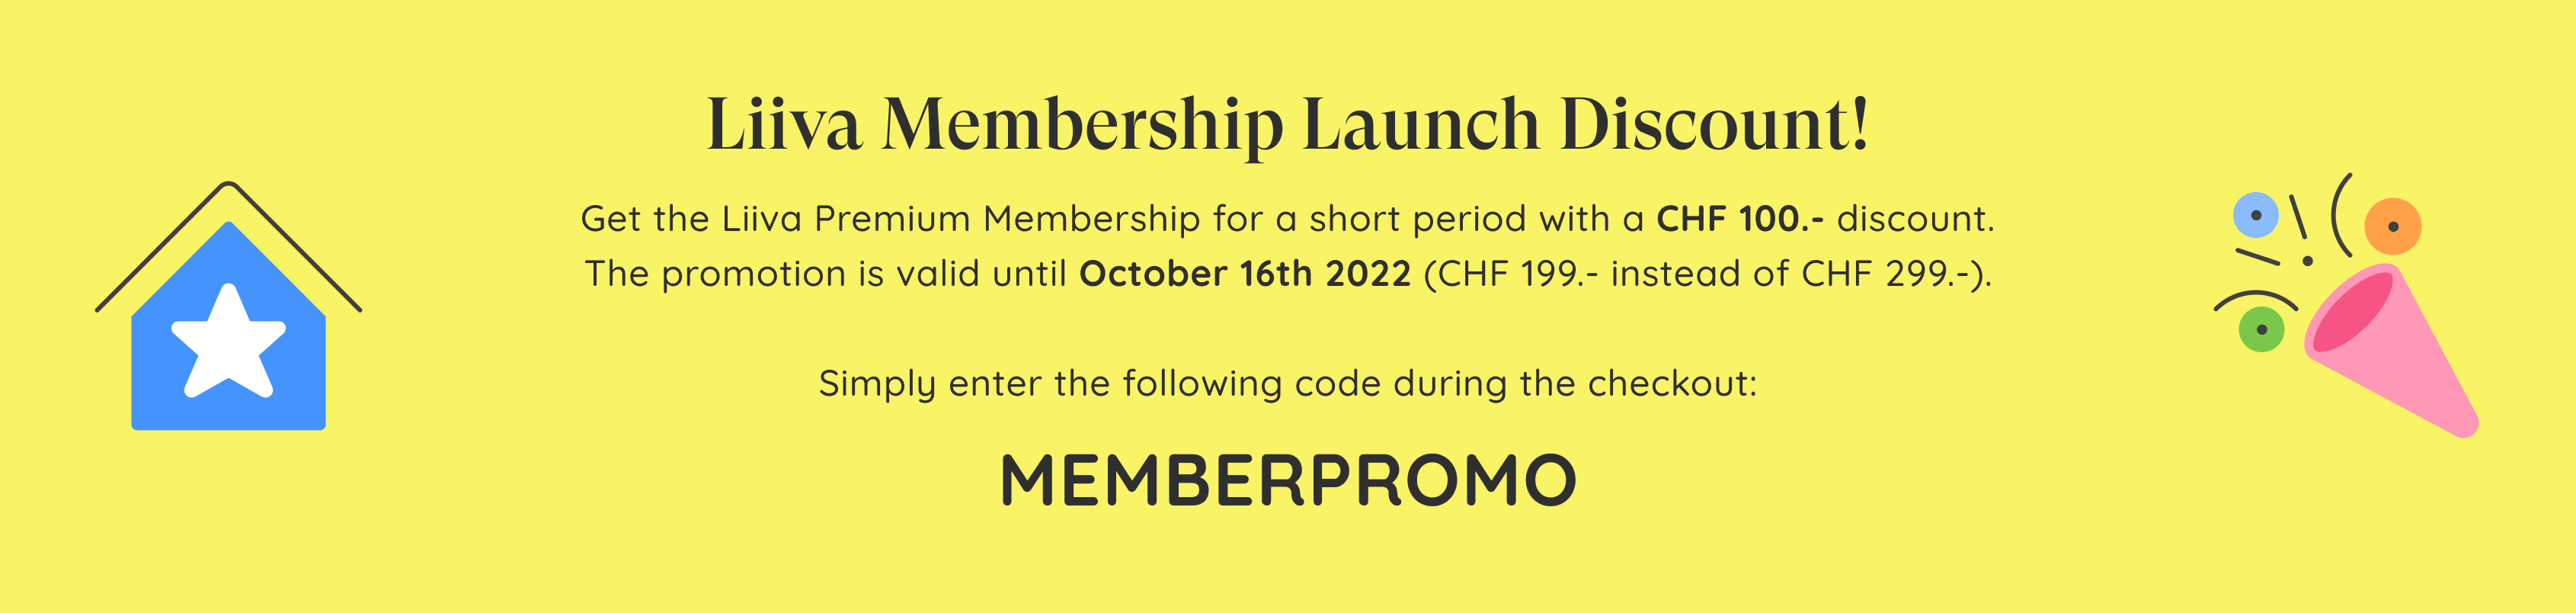 Liiva Membership Promotion EN